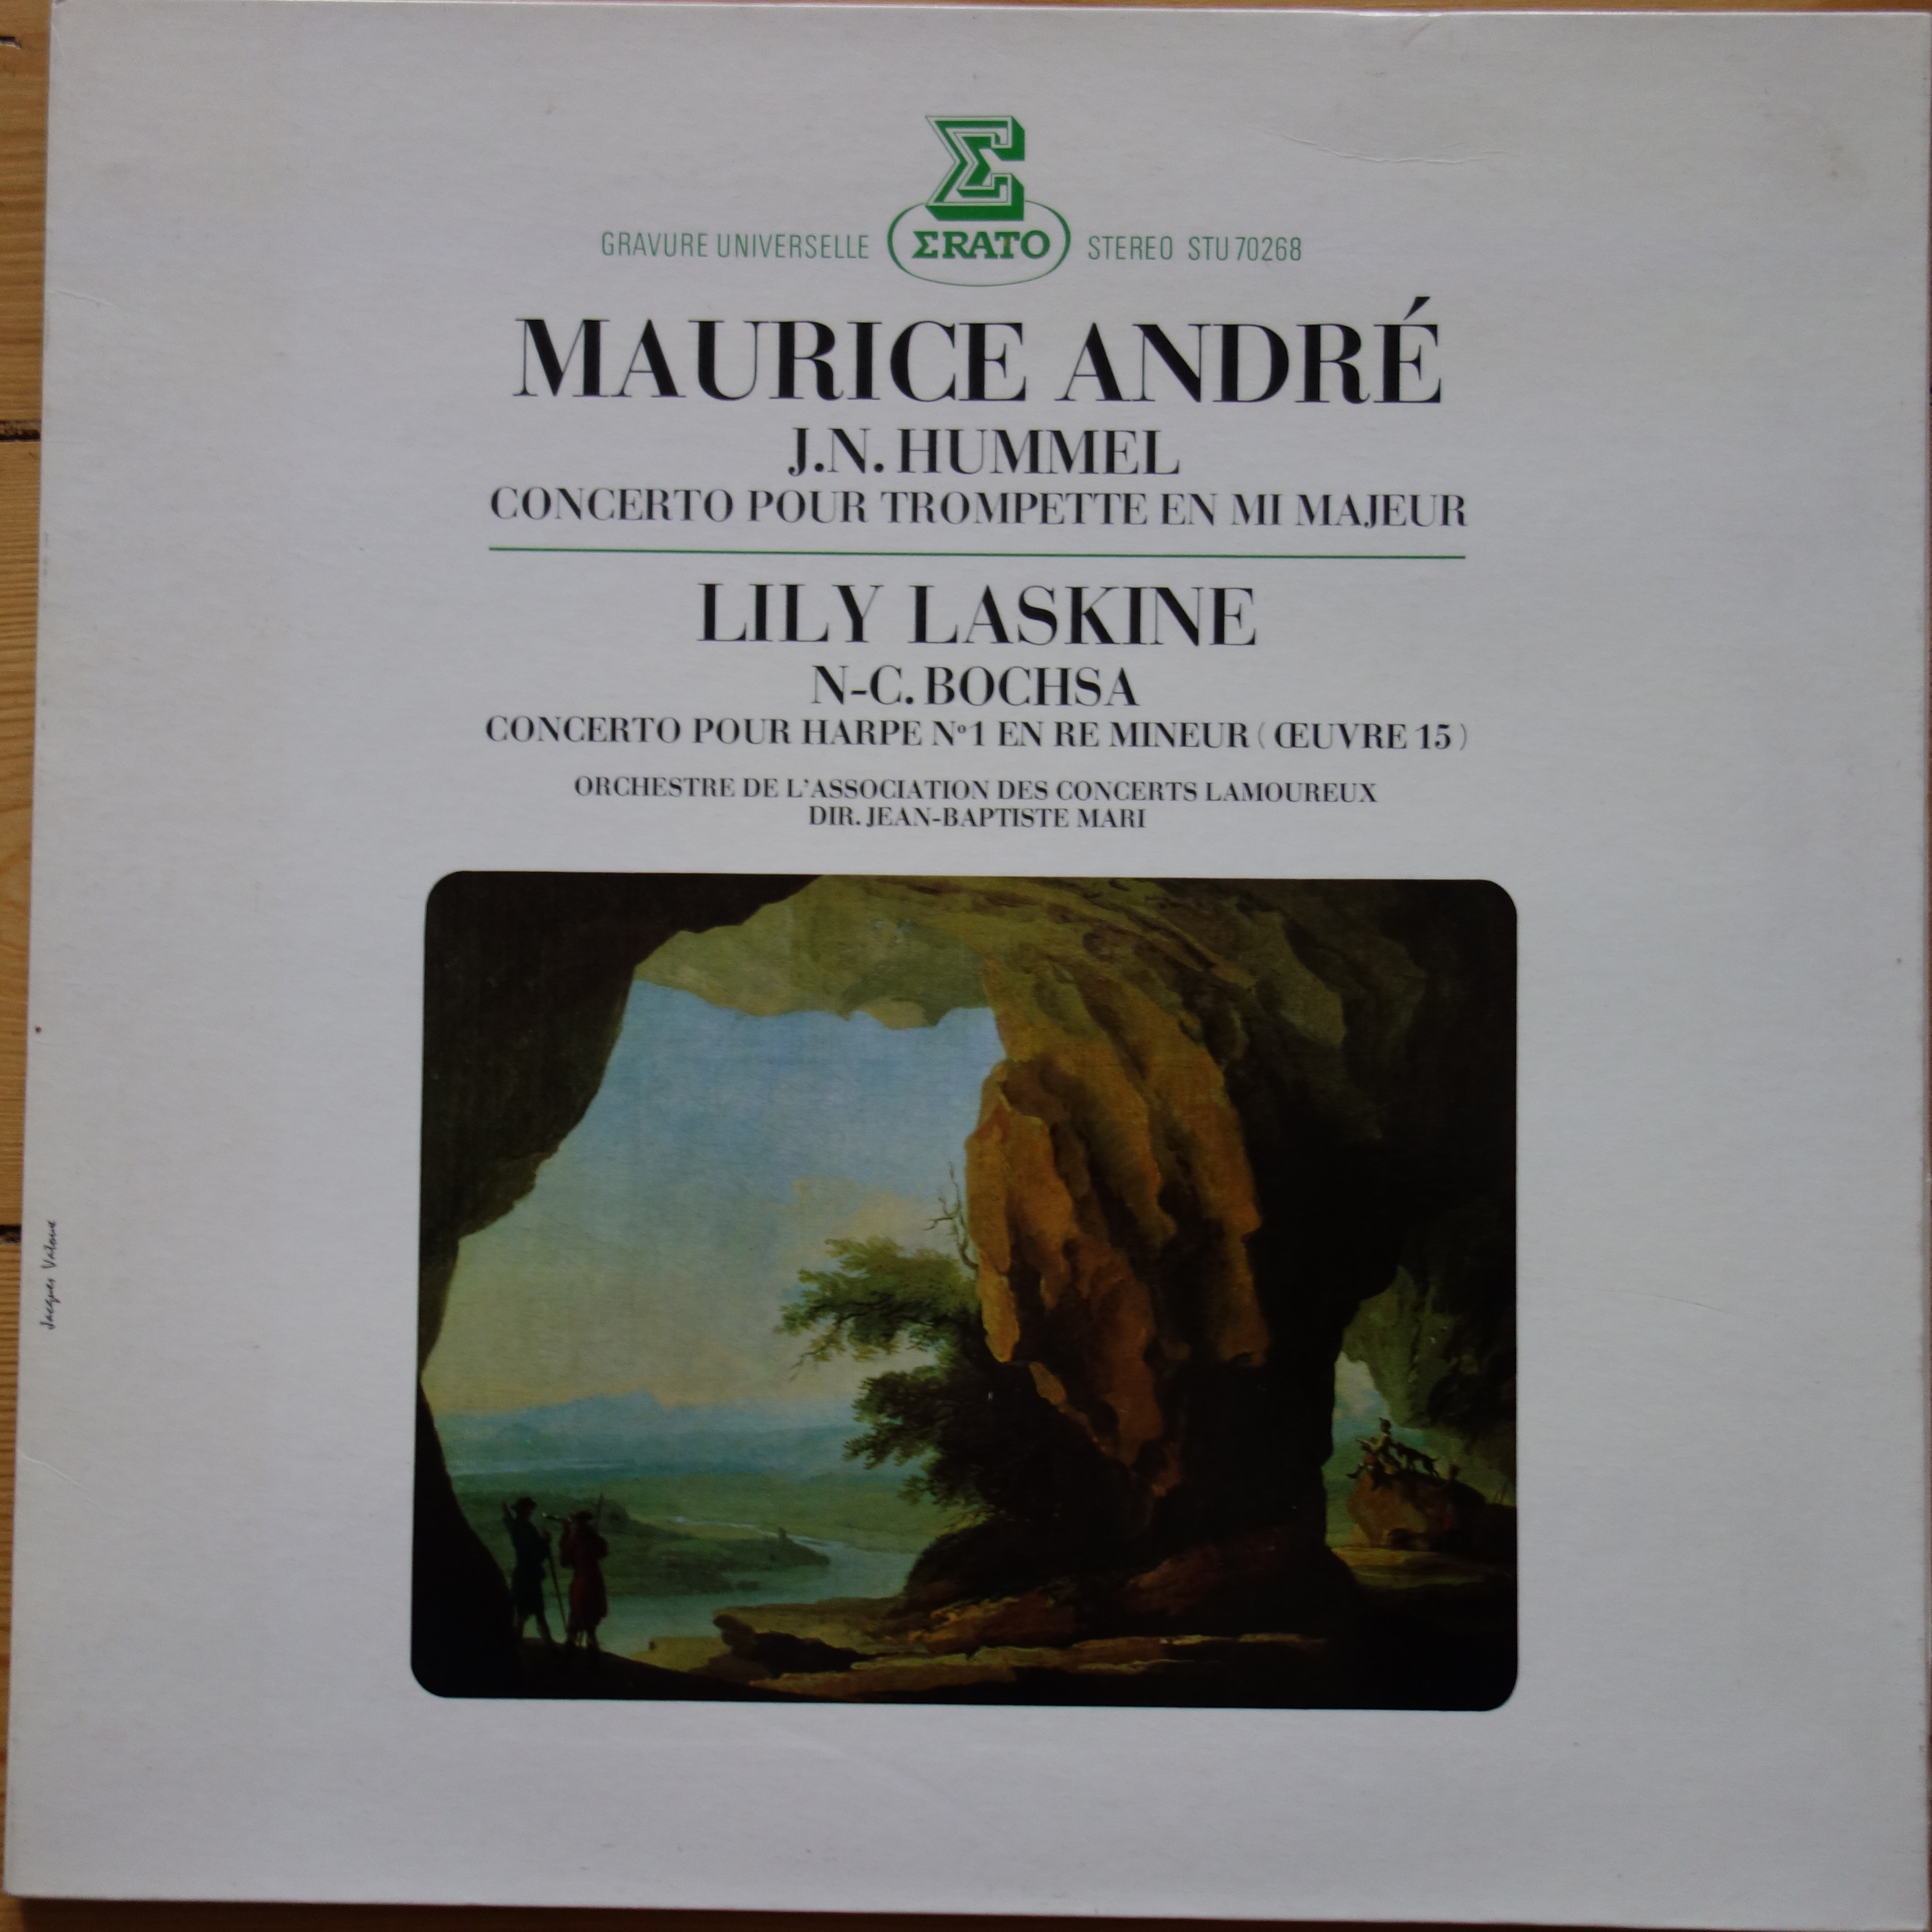 STU 70268 Hummel / Bochsa Concertos / Maurice Andre / Lily Laskine